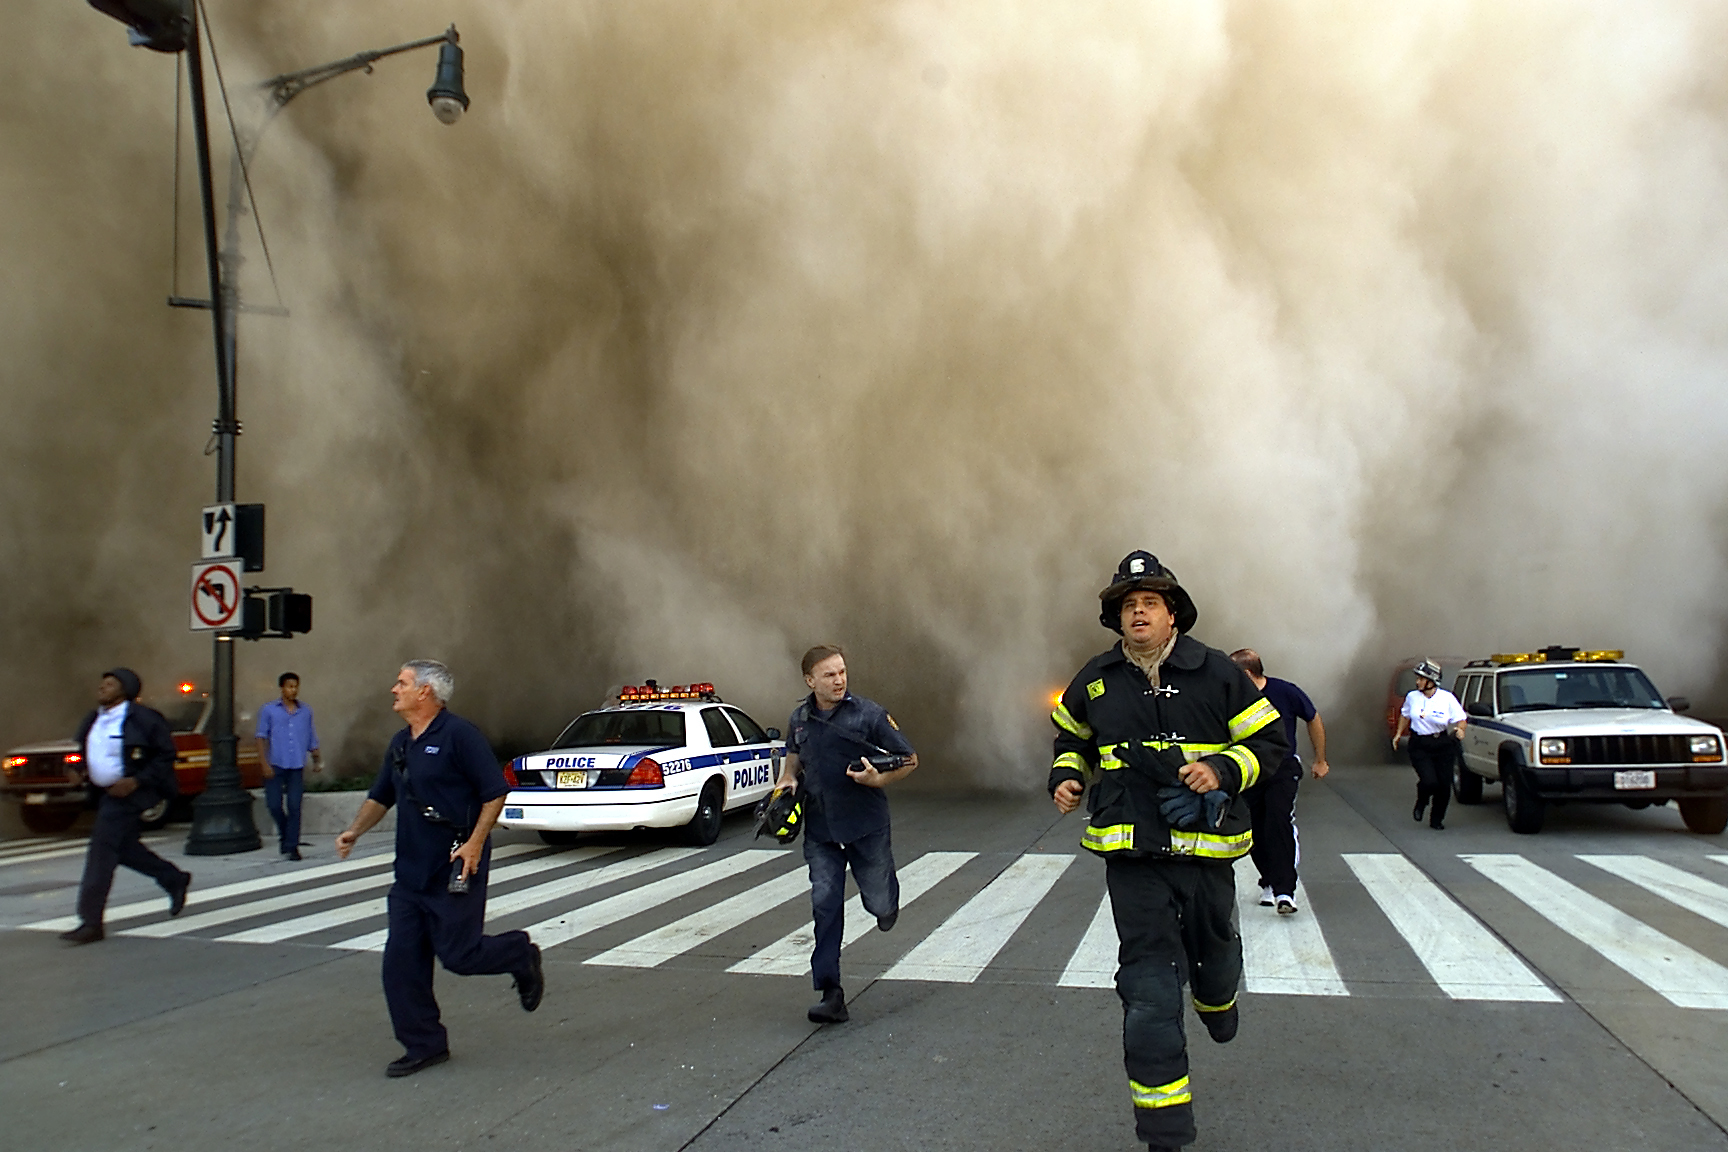 11 июня 2011. Башни-Близнецы 11 сентября 2001. Теракт 11 сентября 2001 года башни Близнецы.